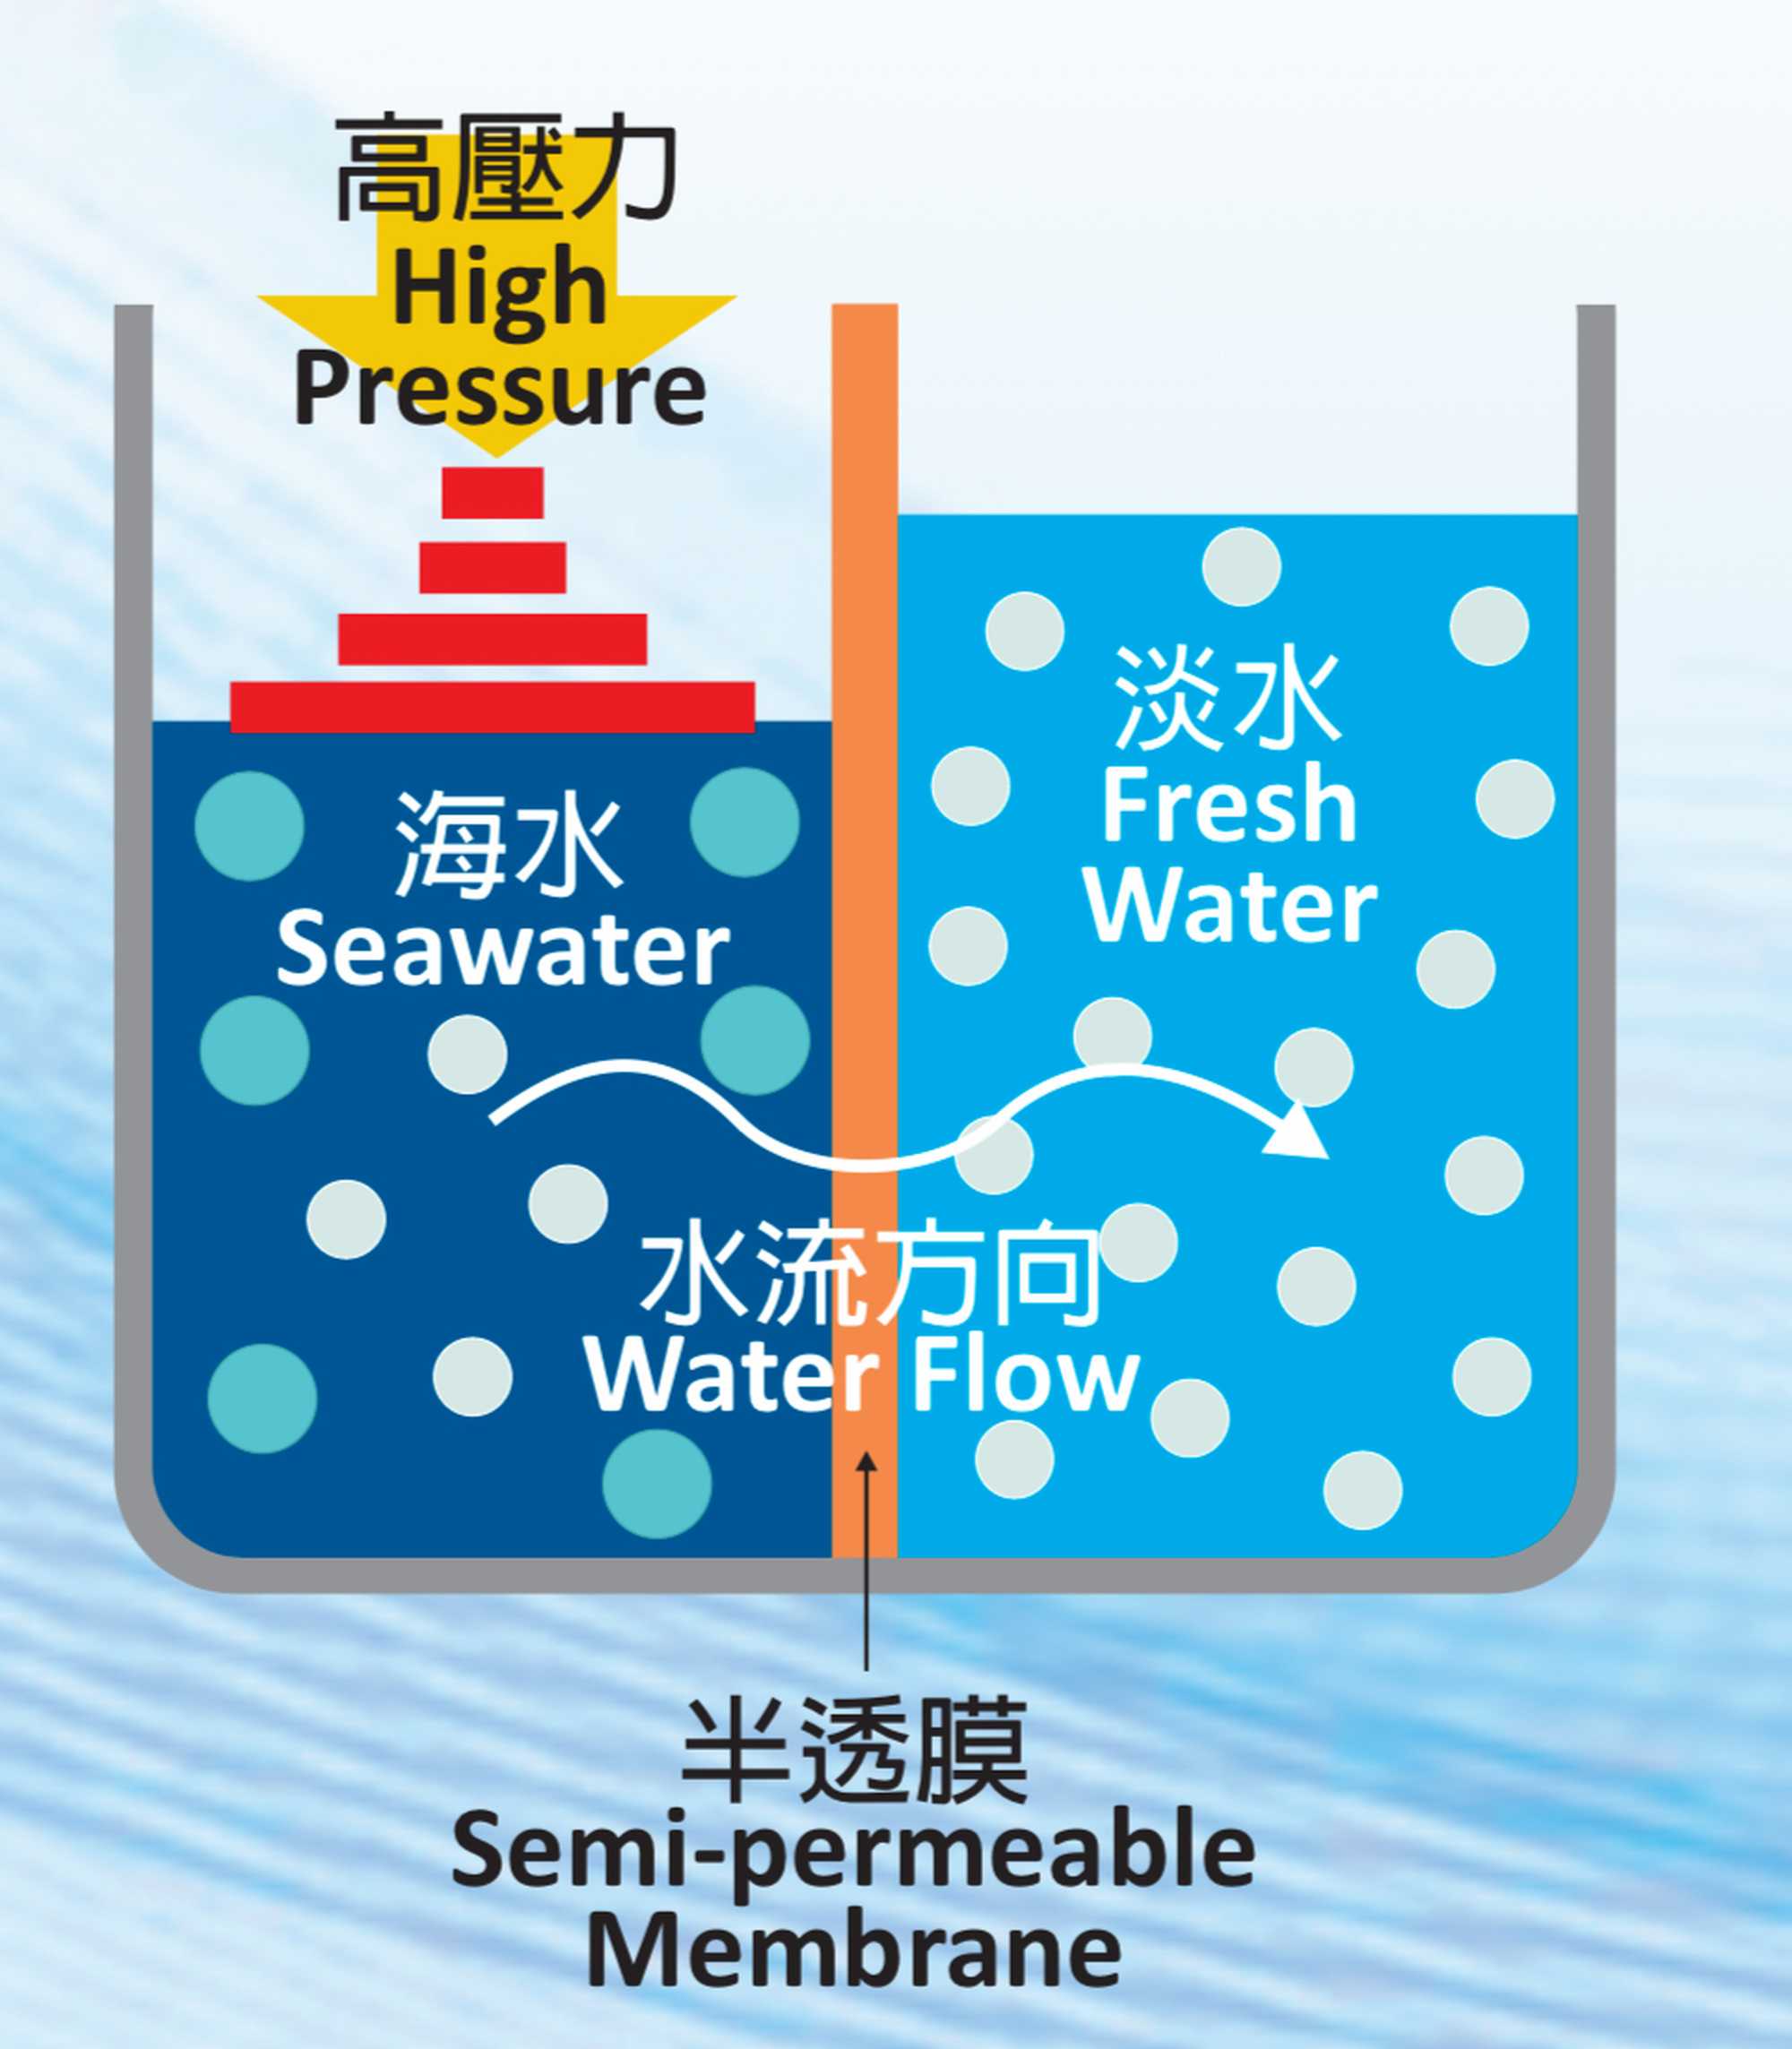 逆渗透的原理是透过向含盐分的海水加压，使水份通过半透膜流向淡水方向，半透膜会阻挡盐分、杂质和微生物等，以净化海水。